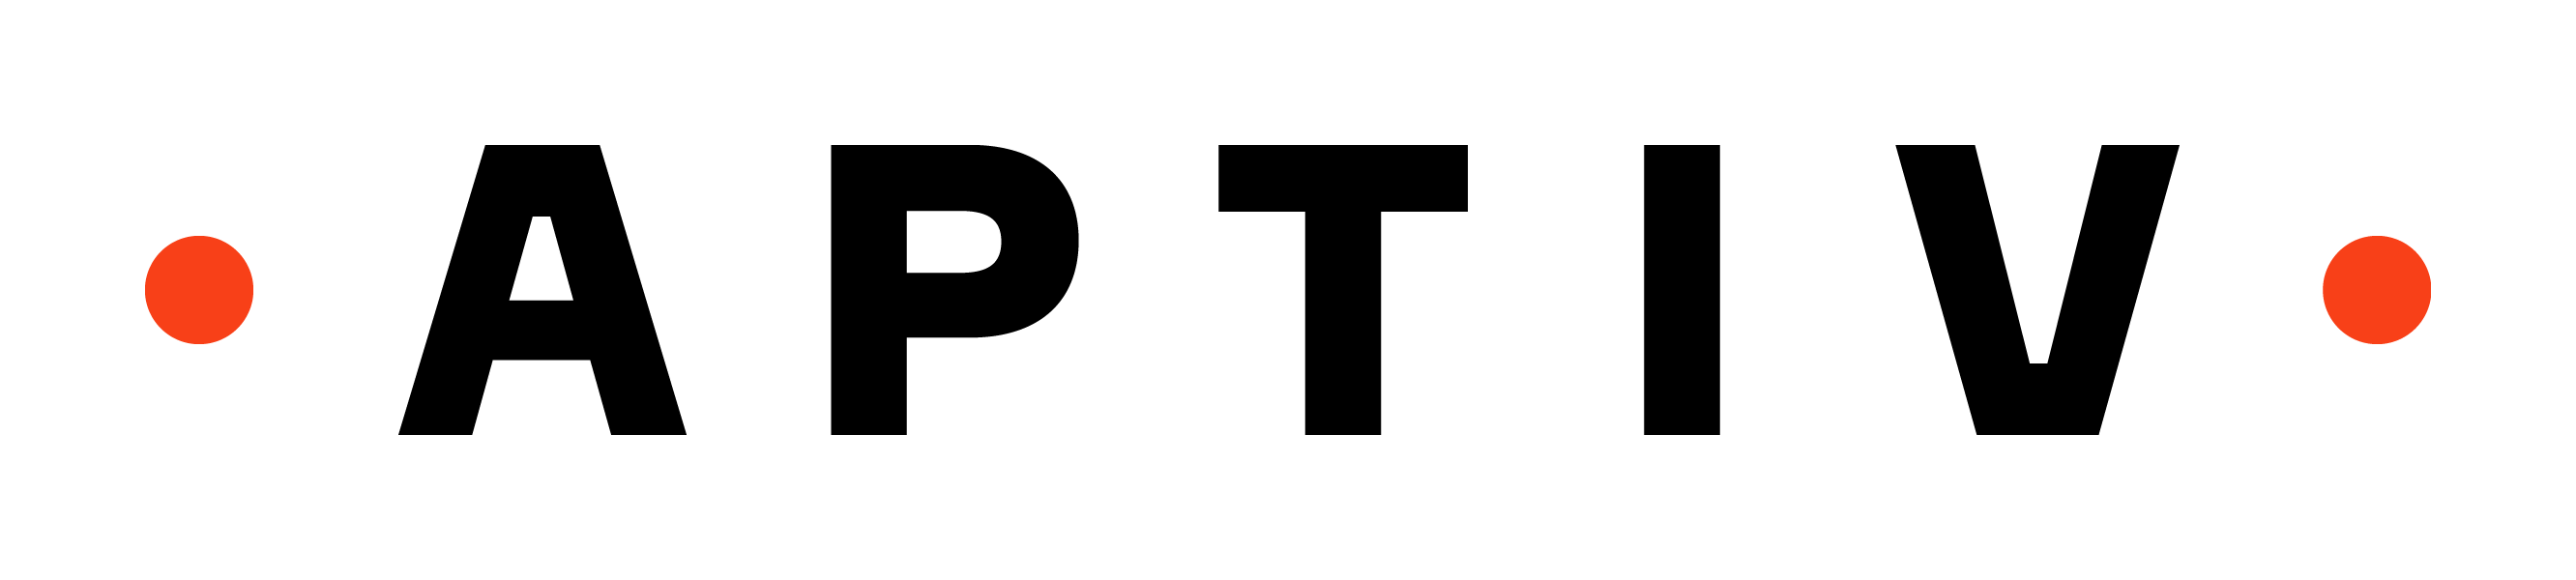 Image result for aptiv logo